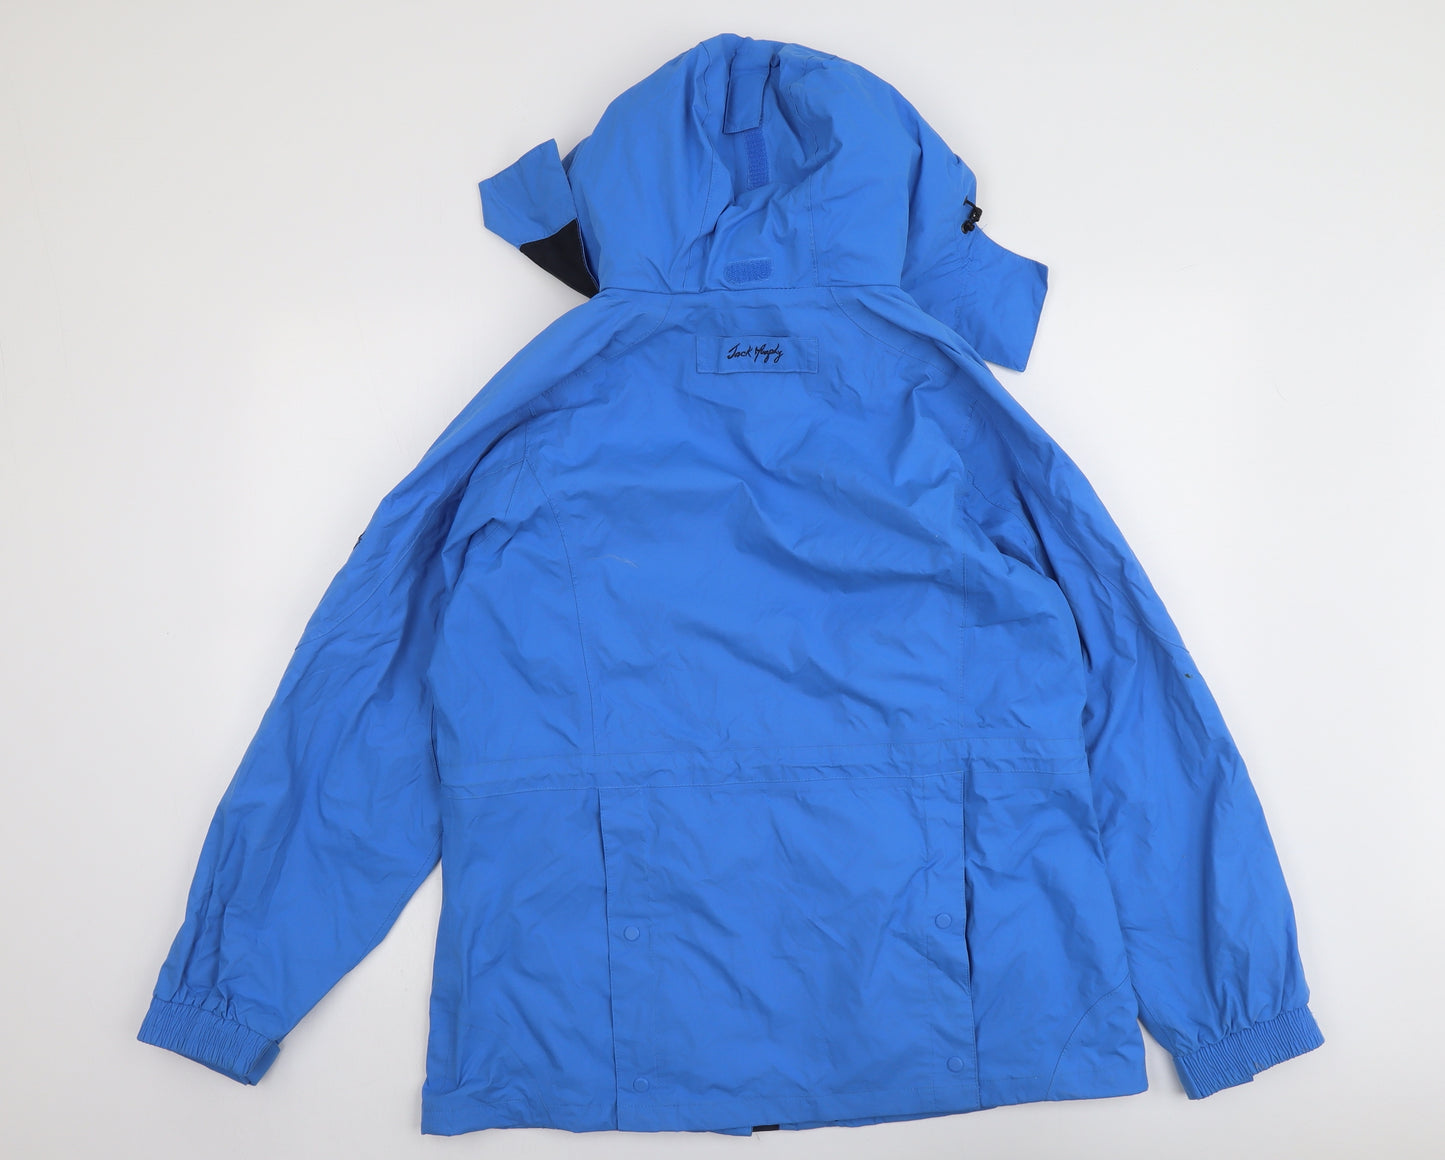 Jack Murphy Womens Blue Windbreaker Jacket Size 14 Zip